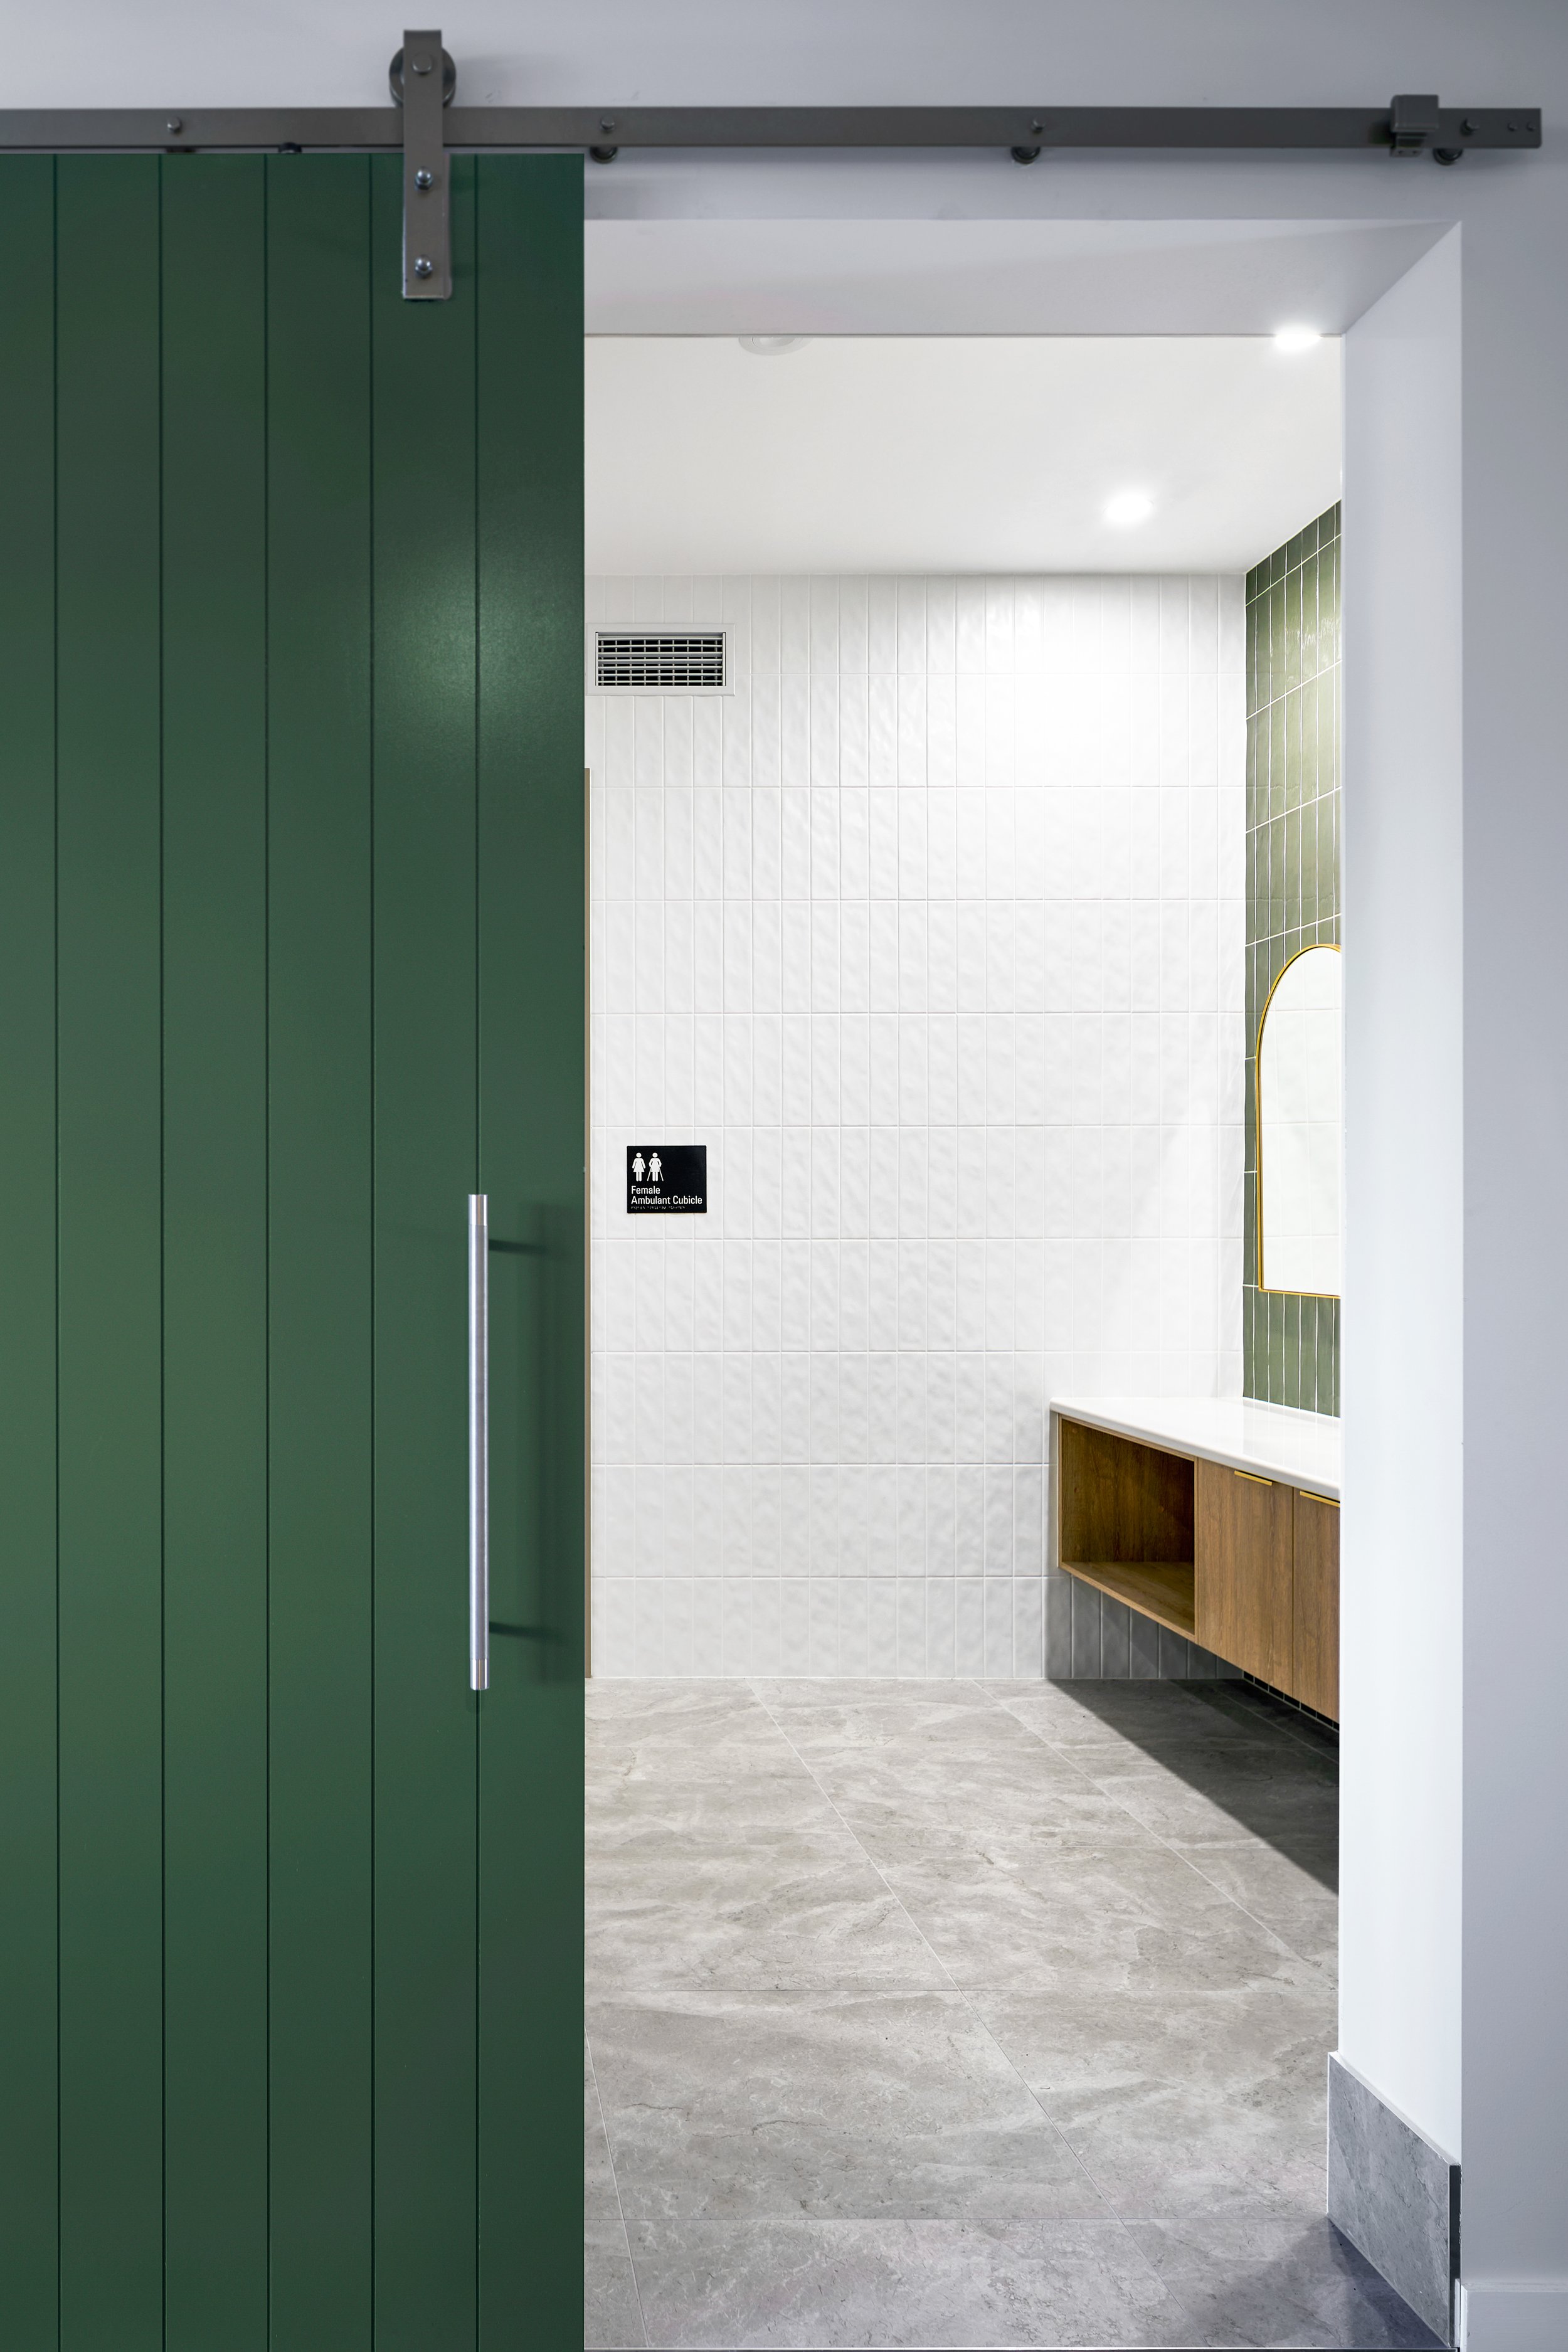  Antara Studios Bathroom/Locker Room 